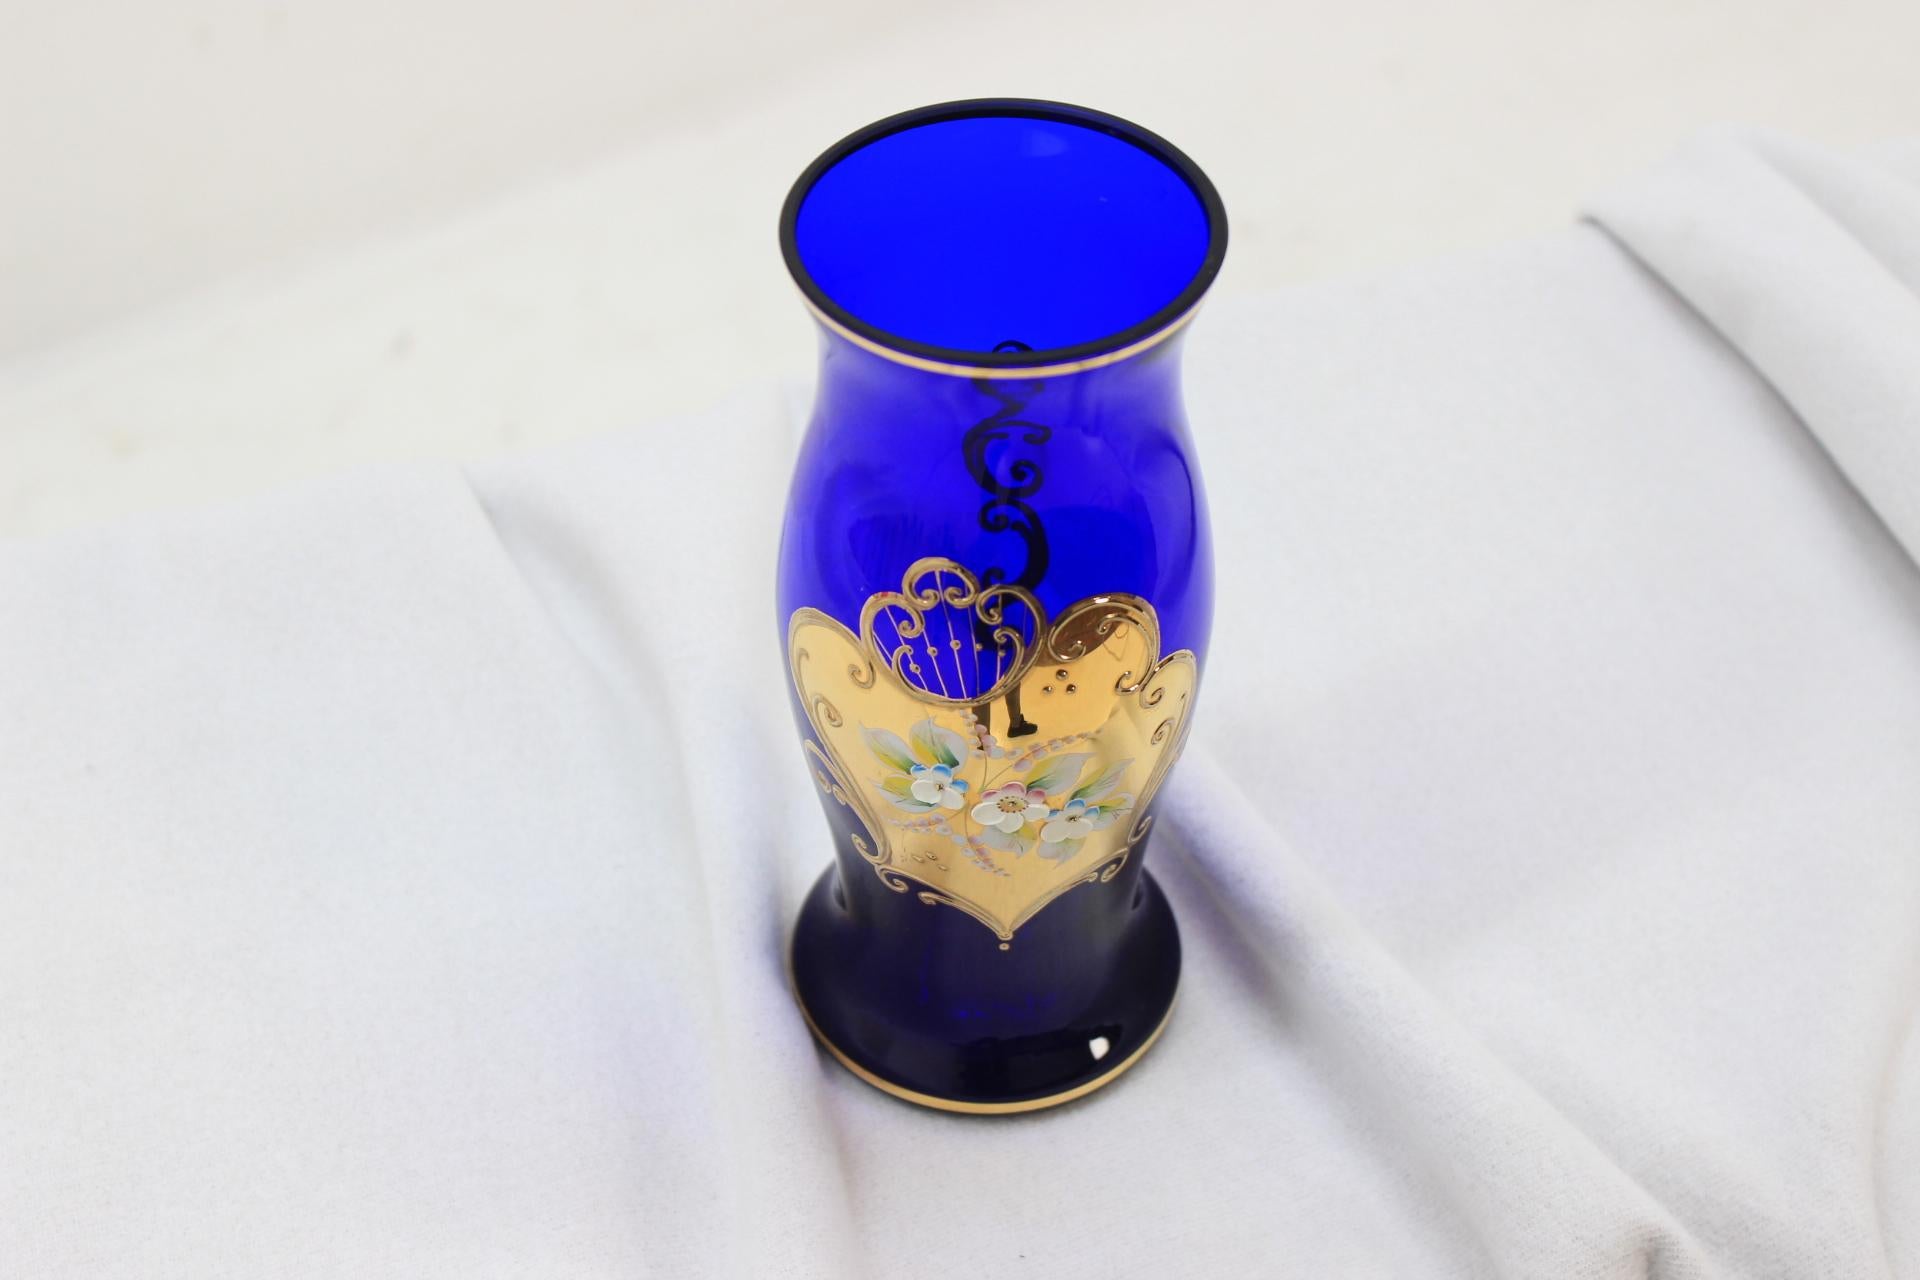 Der Artikel ist aus kobaltblauem, handbemaltem Glas gefertigt. Hergestellt in der Tschechoslowakei. Ursprünglicher Zustand.